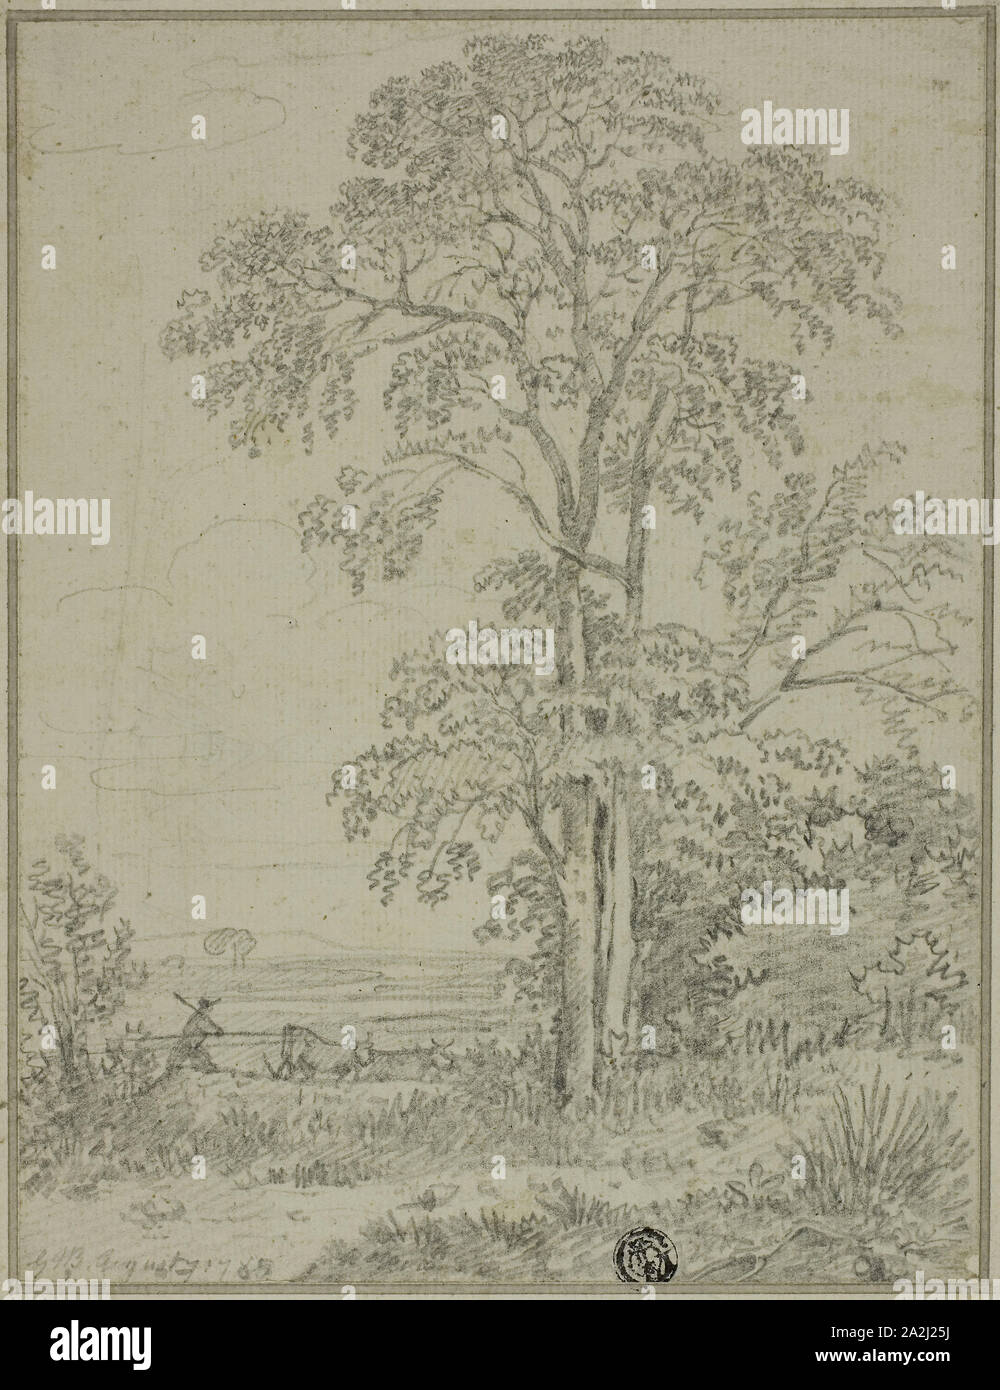 Landschaft mit Baum, Mann, und Kühe, 7. August 1765, von Sir George Howland Beaumont, Englisch, 1753-1827, England, Graphit zurückzuführen auf Elfenbein Bütten, festgelegt auf Elfenbein verlegt Karte, 200 x 153 mm Stockfoto